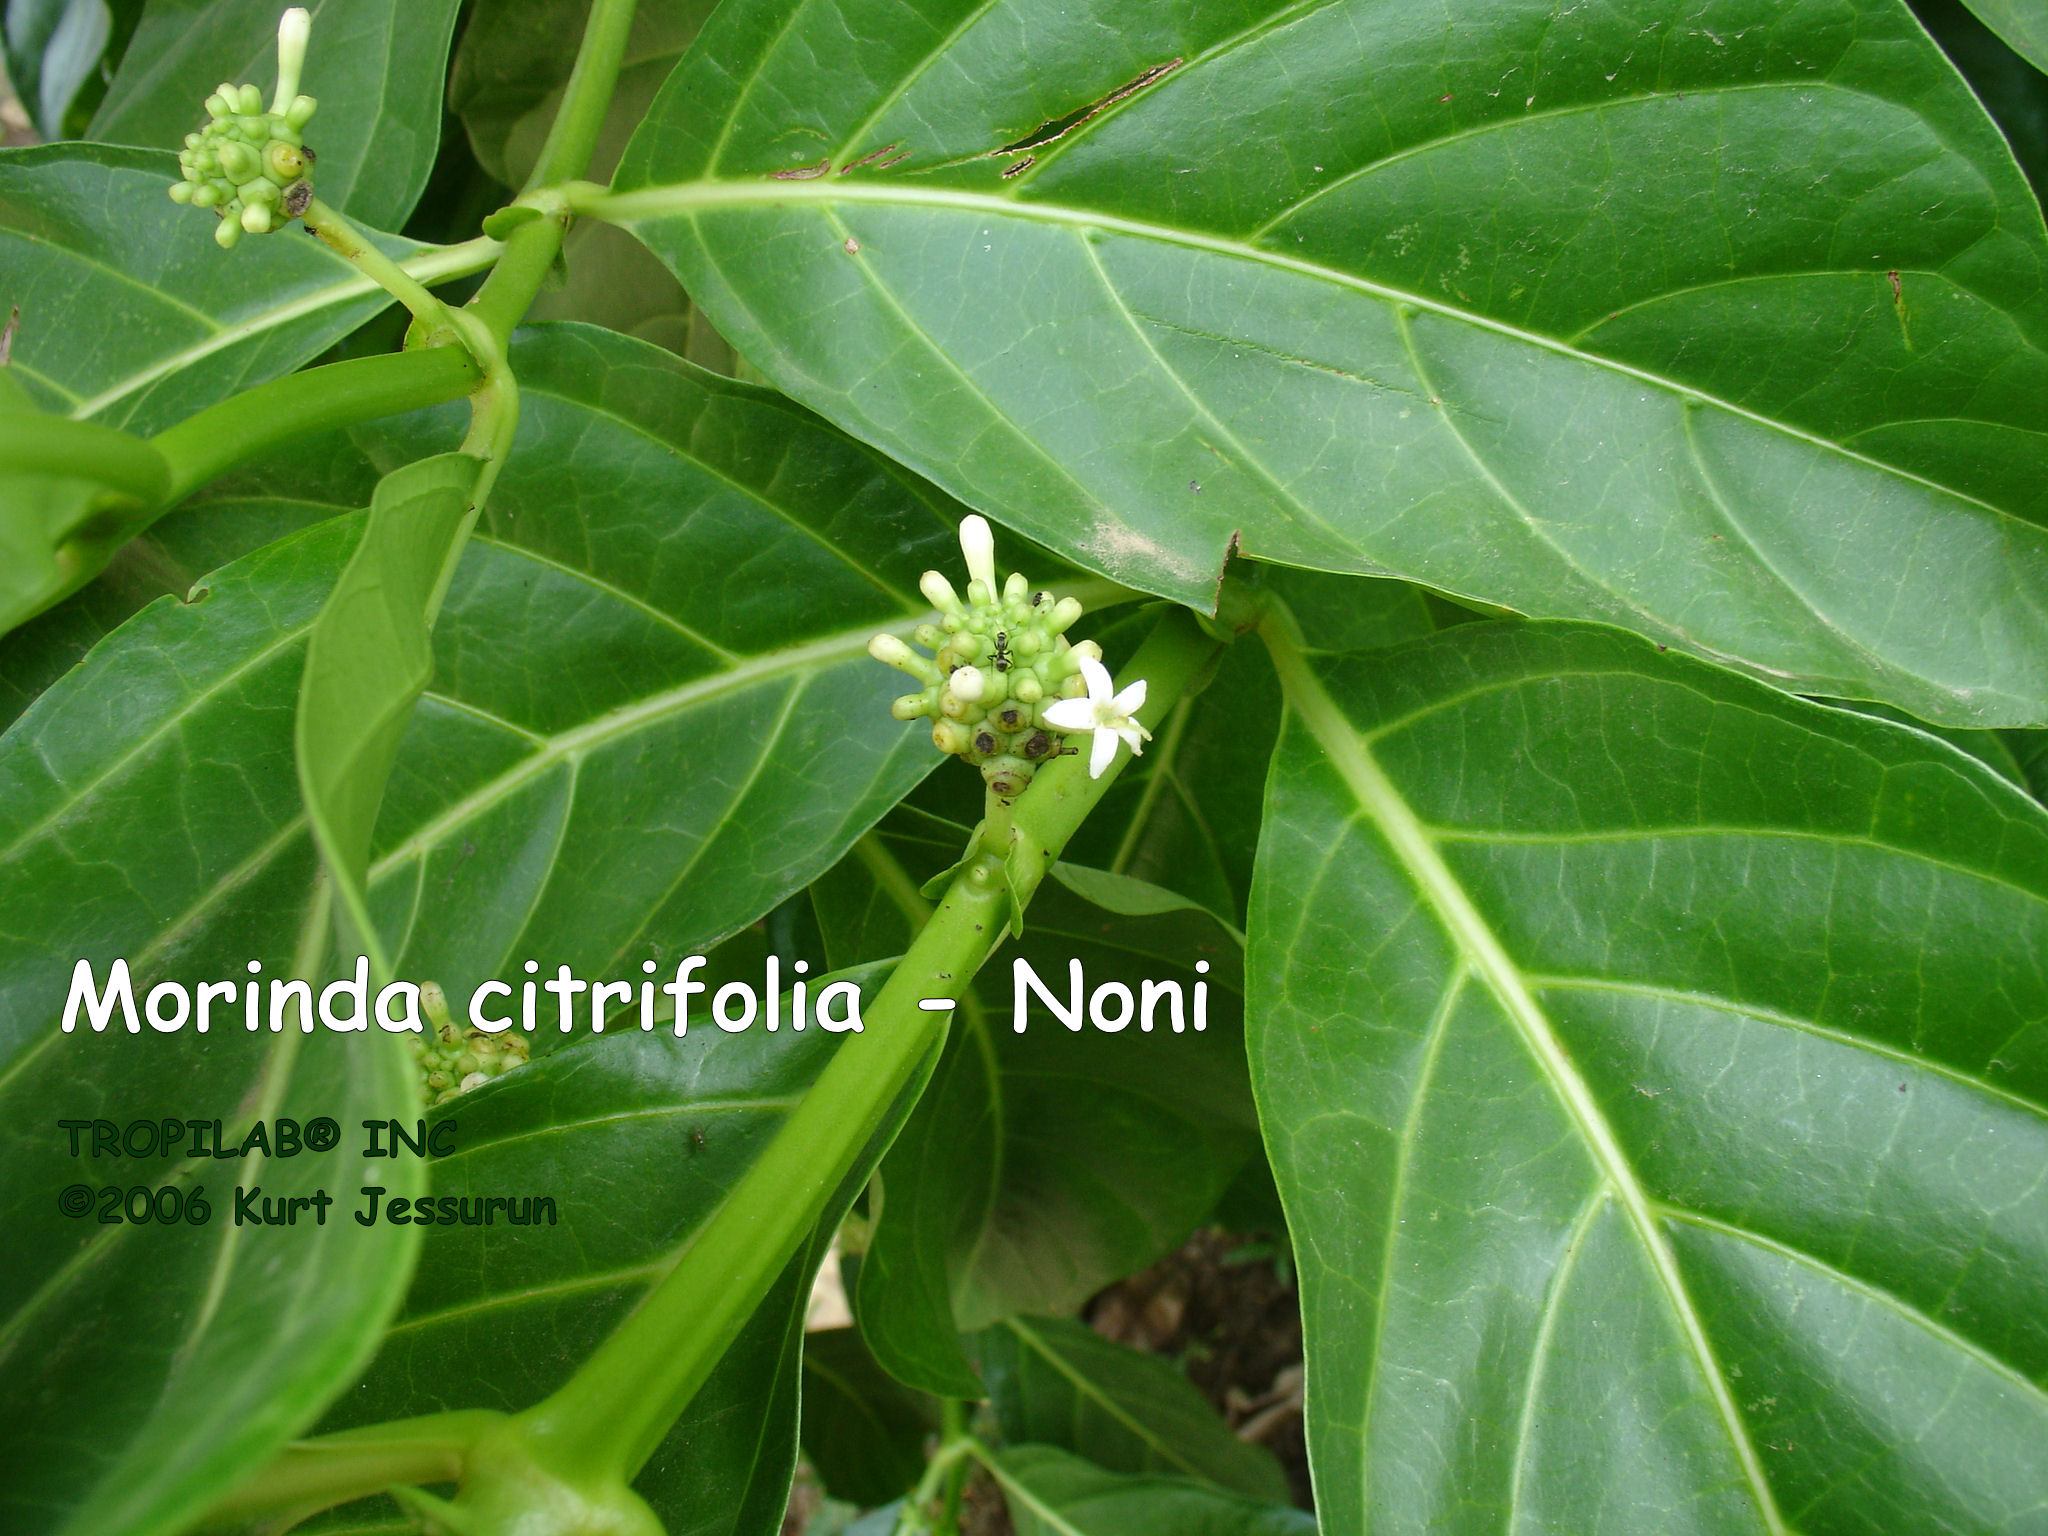 Morinda citrifolia - Noni leaves